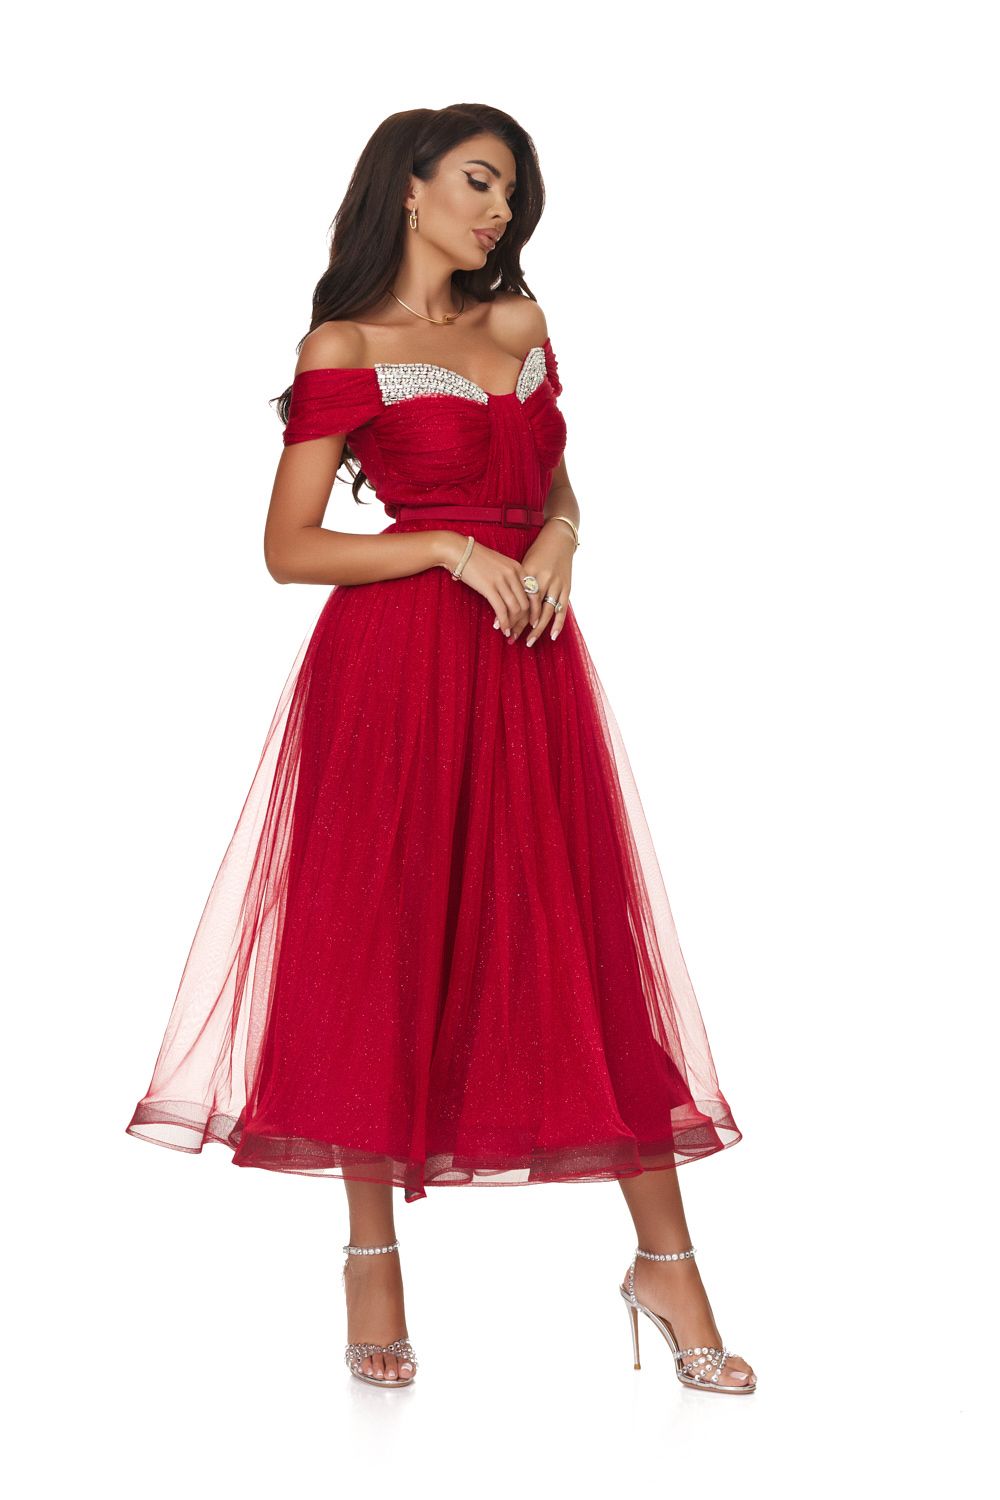 Long red dress for women Tifla Bogas